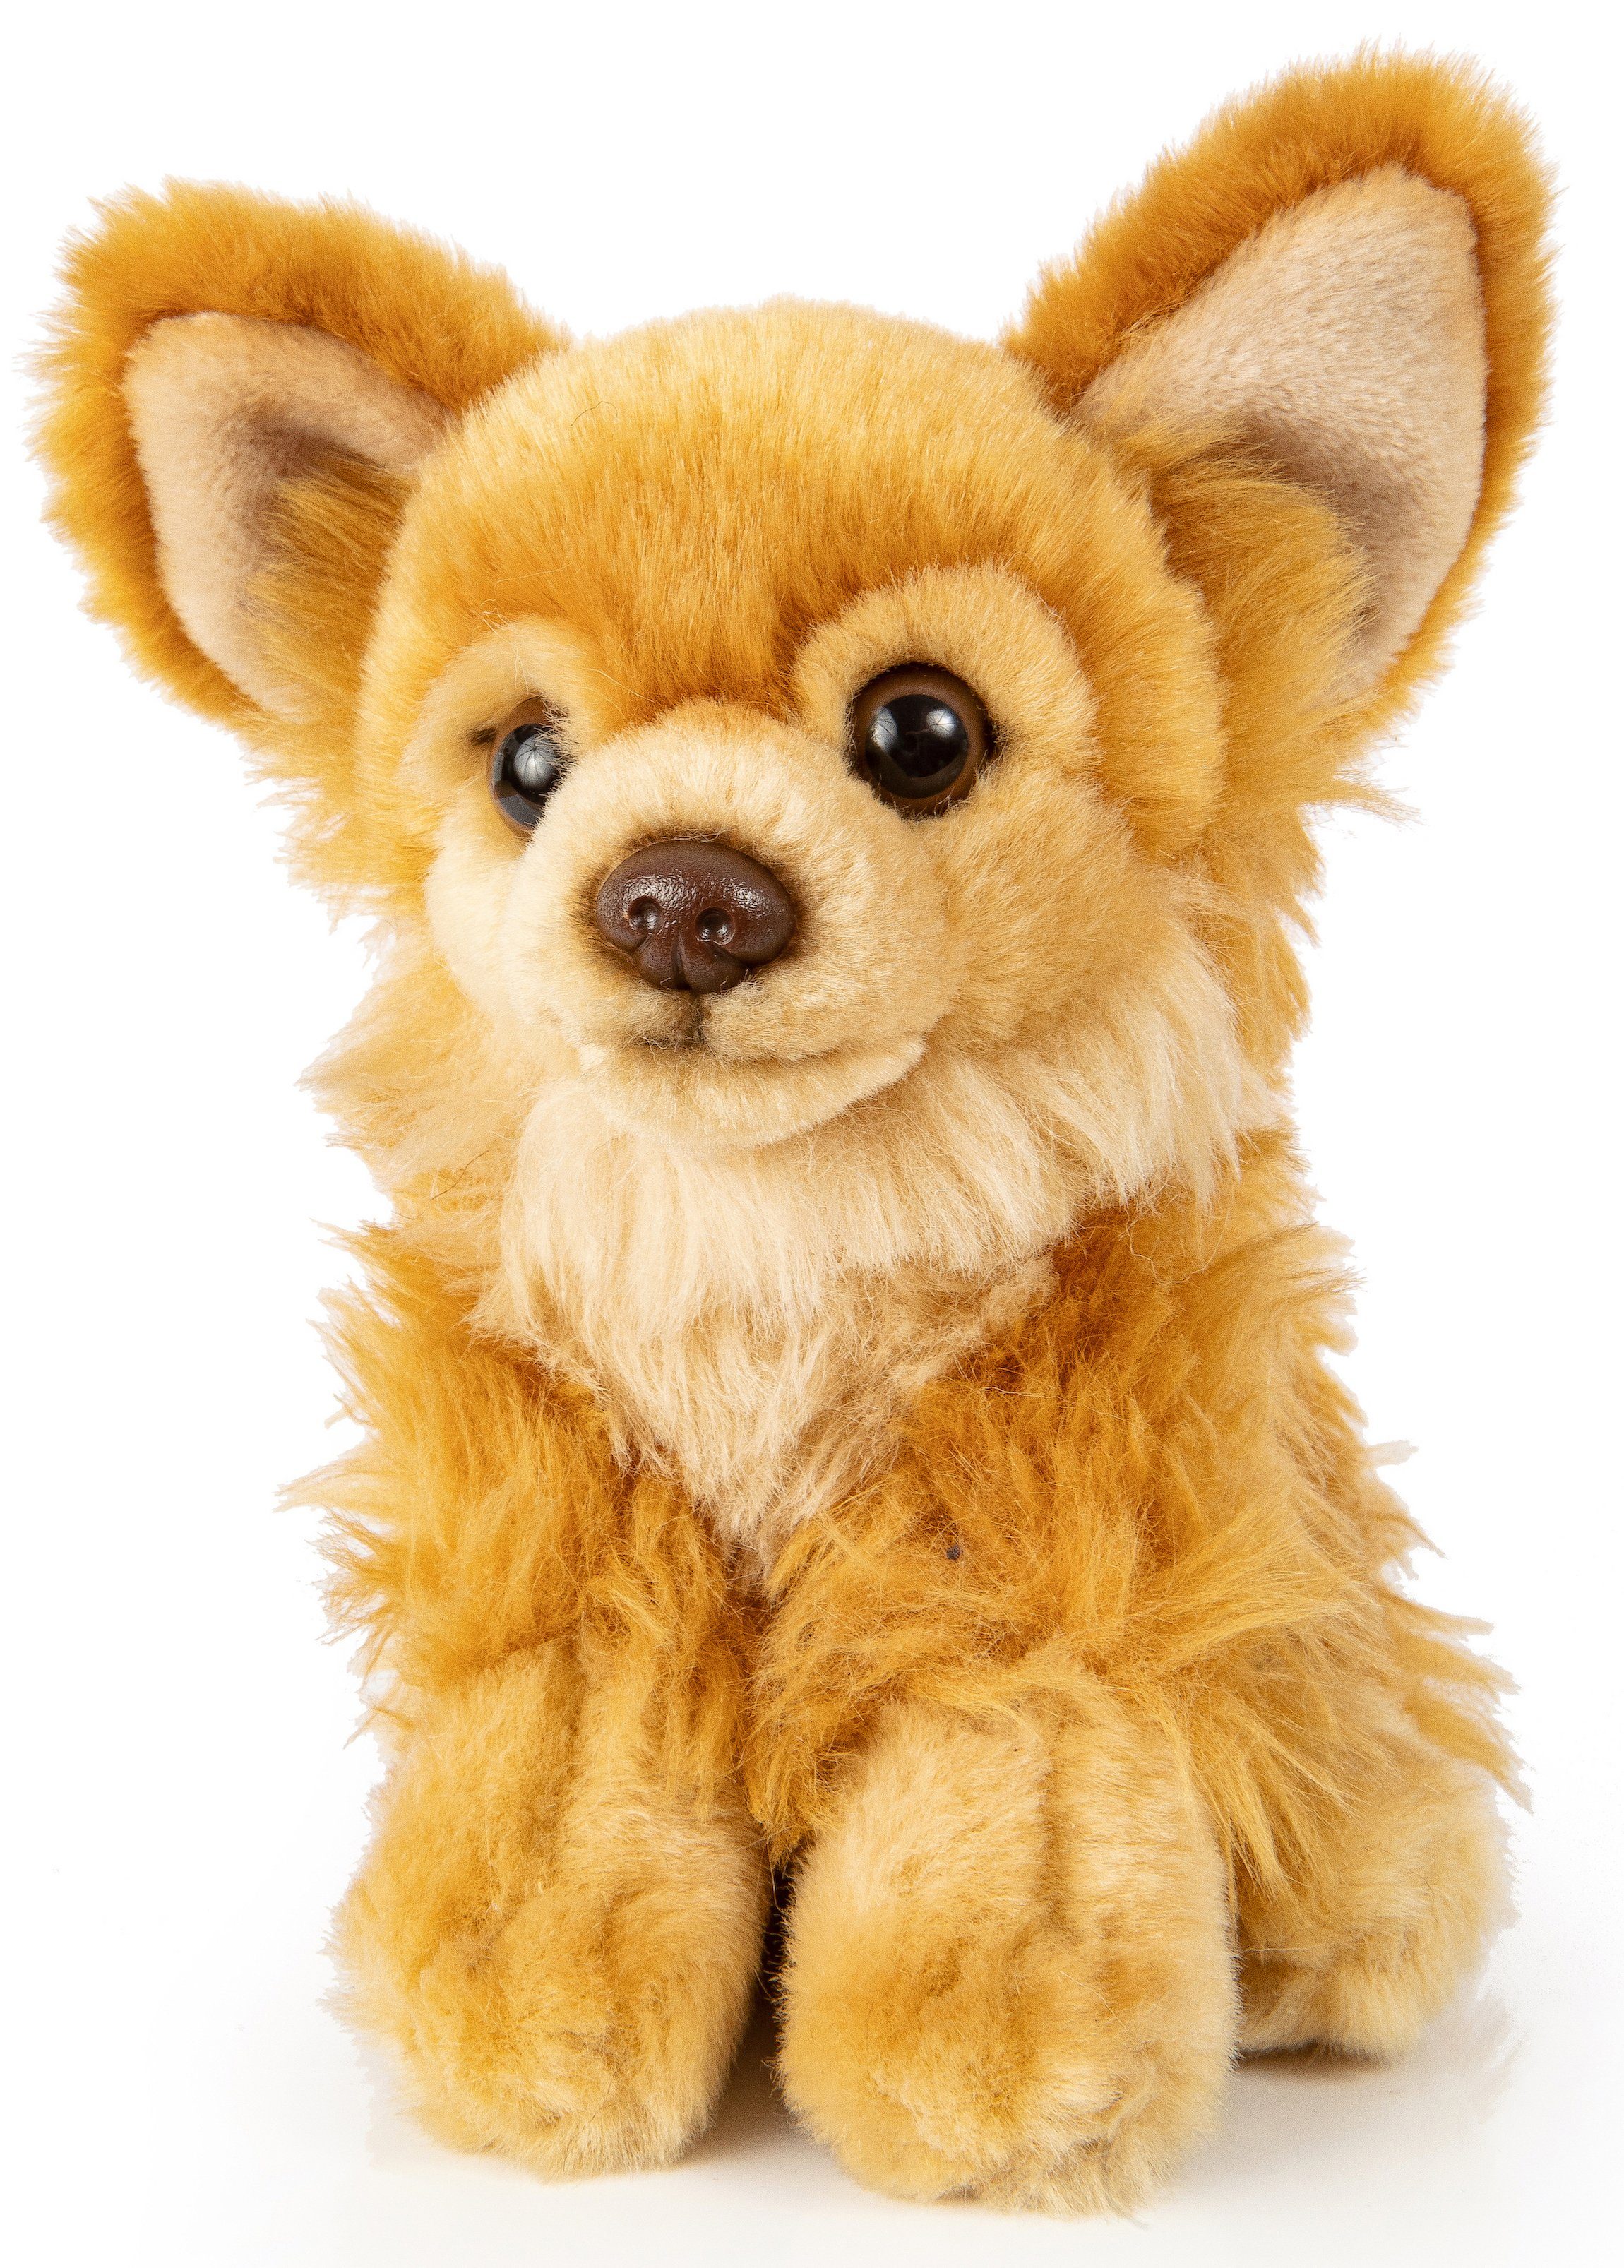 Uni-Toys Kuscheltier Chihuahua - versch. Fellfarben - Länge 18 cm - Plüsch-Hund, Plüschtier, zu 100 % recyceltes Füllmaterial Braun | Kuscheltiere